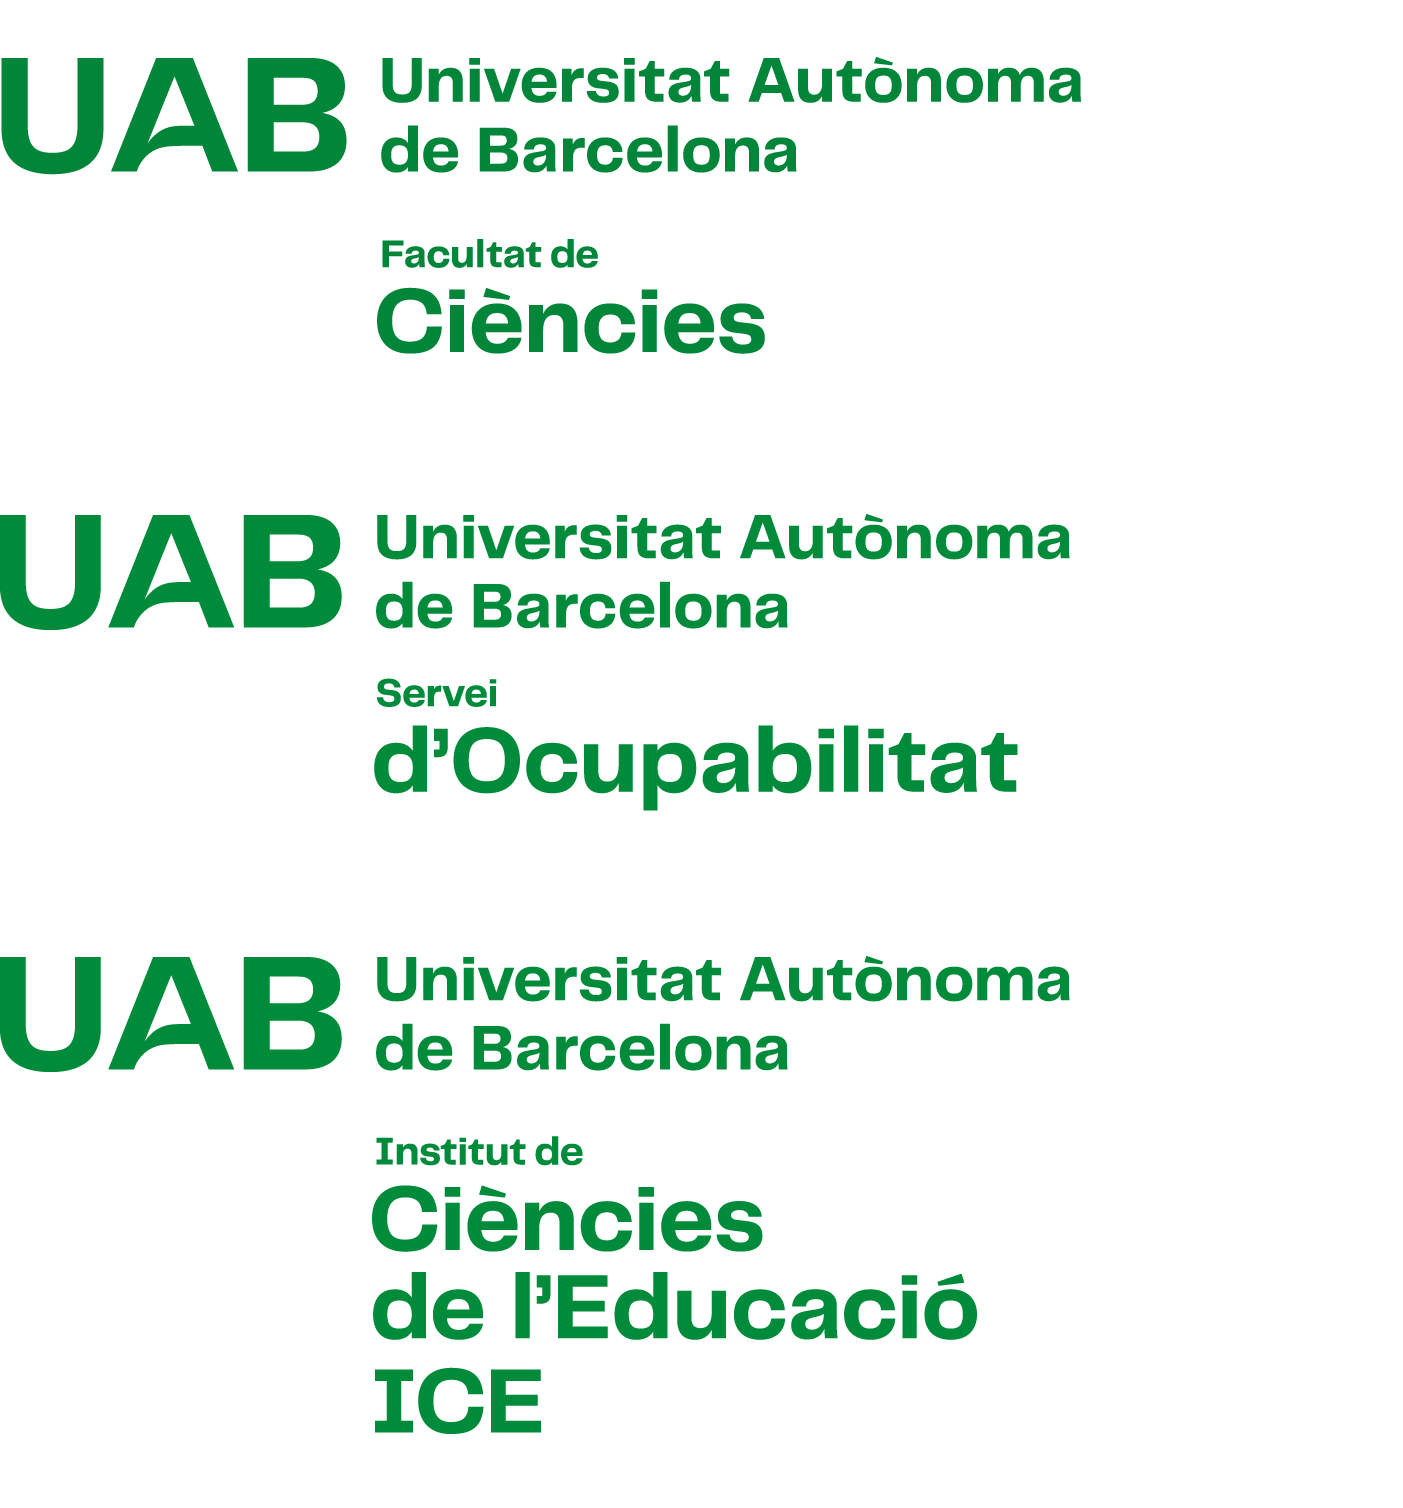 Exemples de construcció de la composició vertical amb versió 3 del logotip UAB